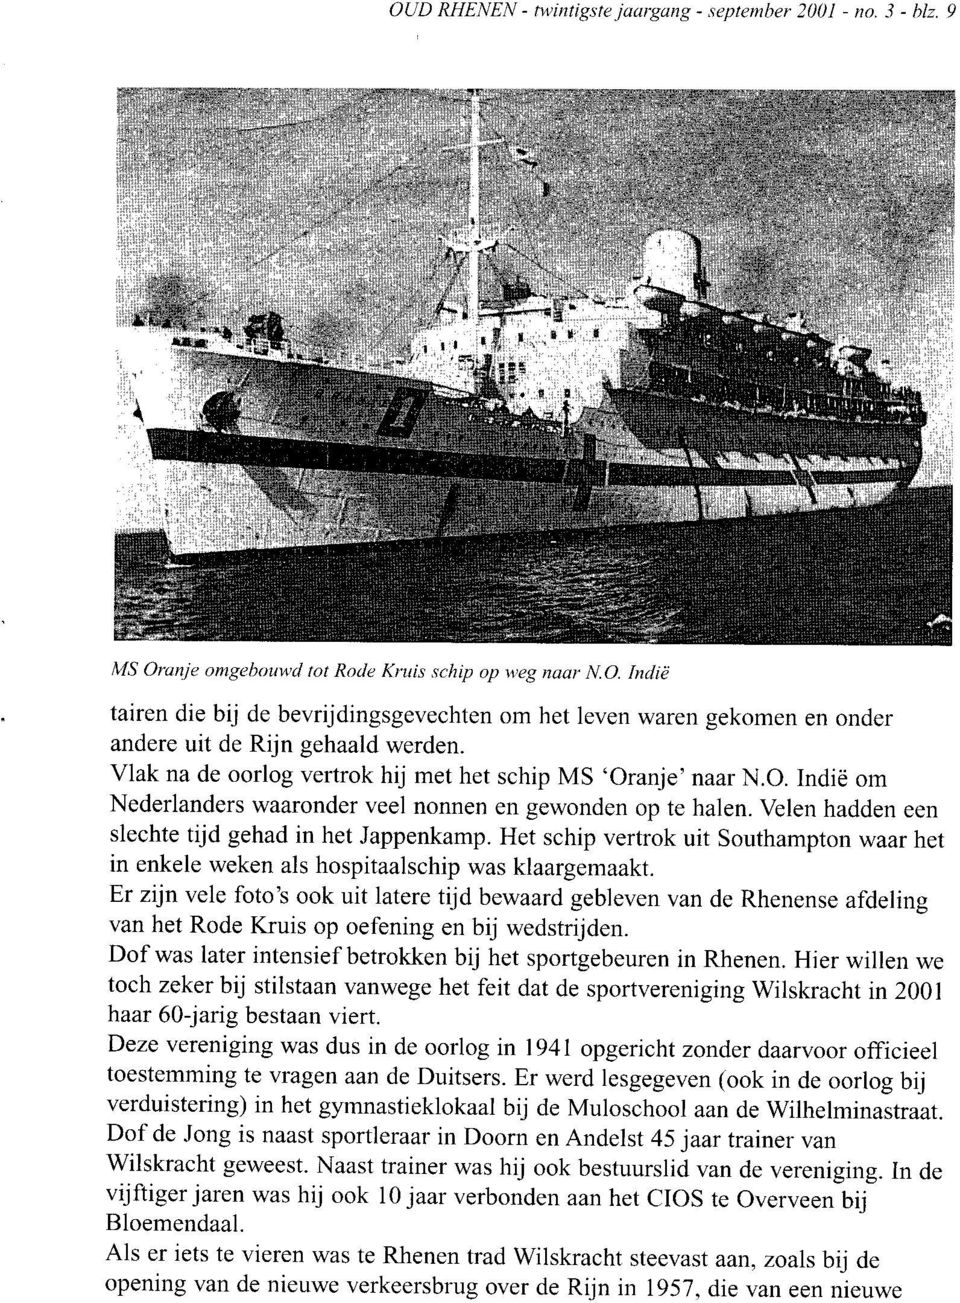 Vlak na de oorlog vertrok hij met het schip MS 'Oranje' naar N.O. Indië om Nederlanders waaronder veel nonnen en gewonden op te halen. Velen hadden een slechte tijd gehad in het Jappenkamp.